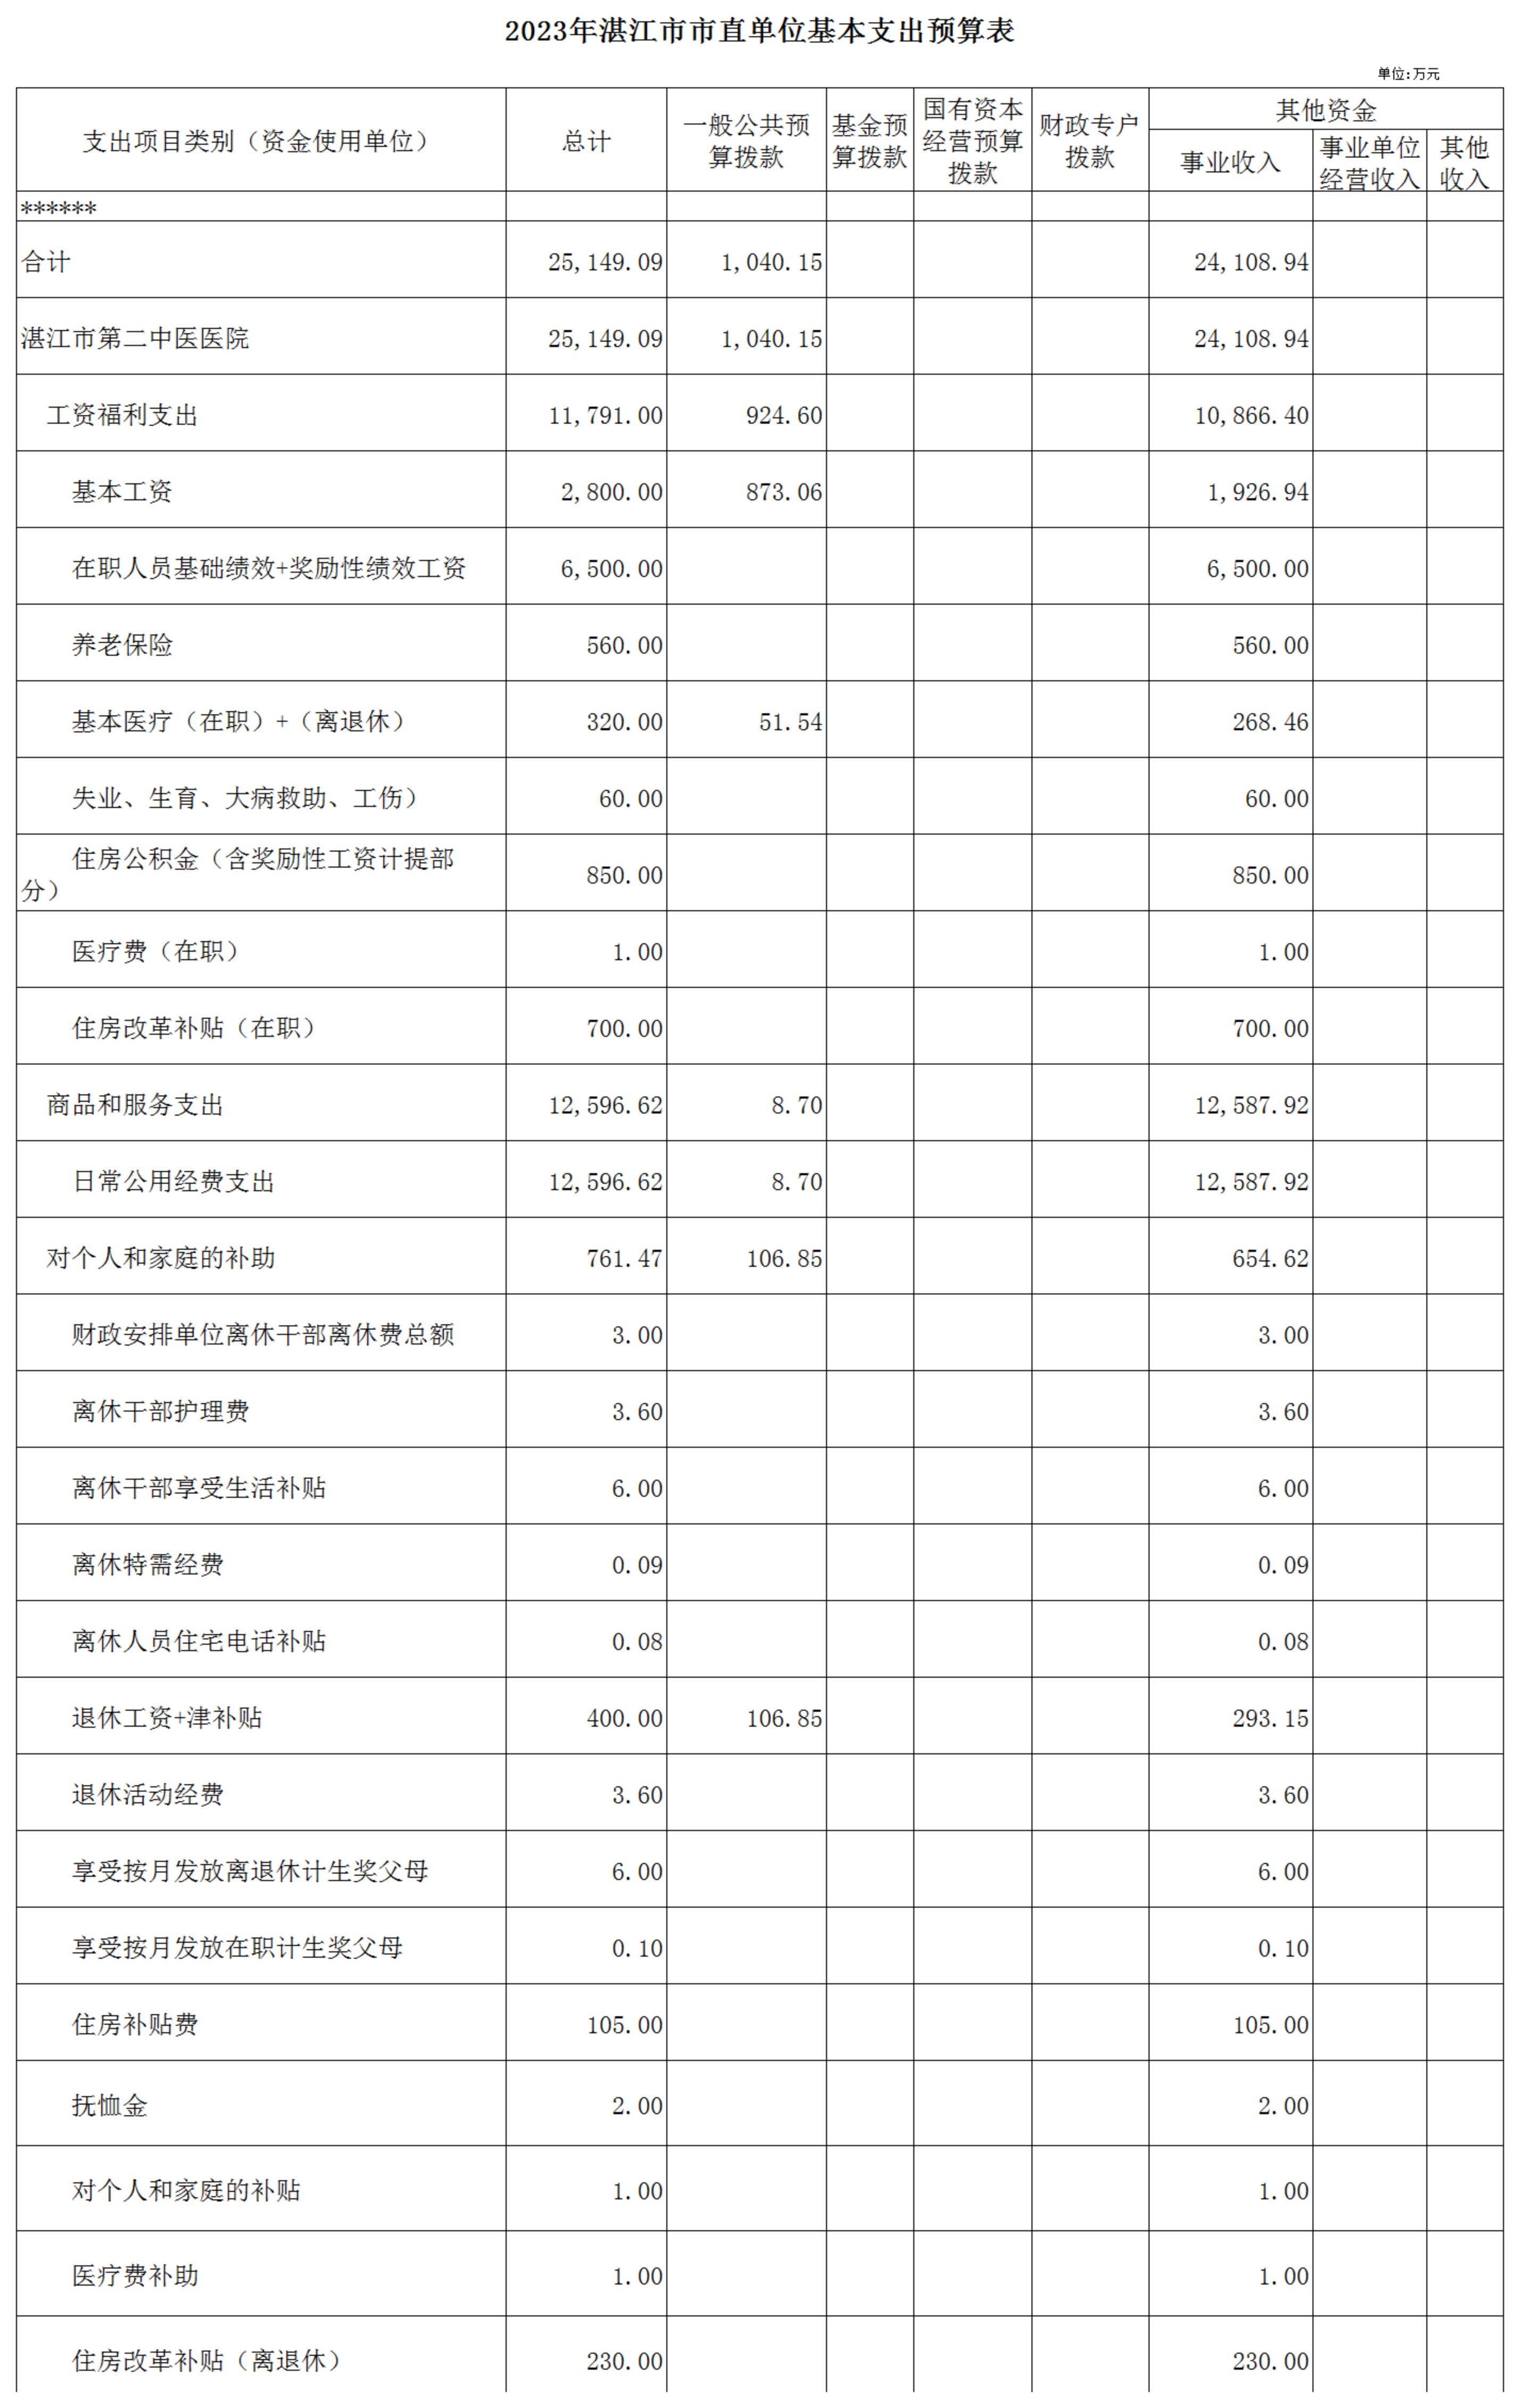 hjc888黄金城官网入口2023年预算编报说明-官网用_03.png